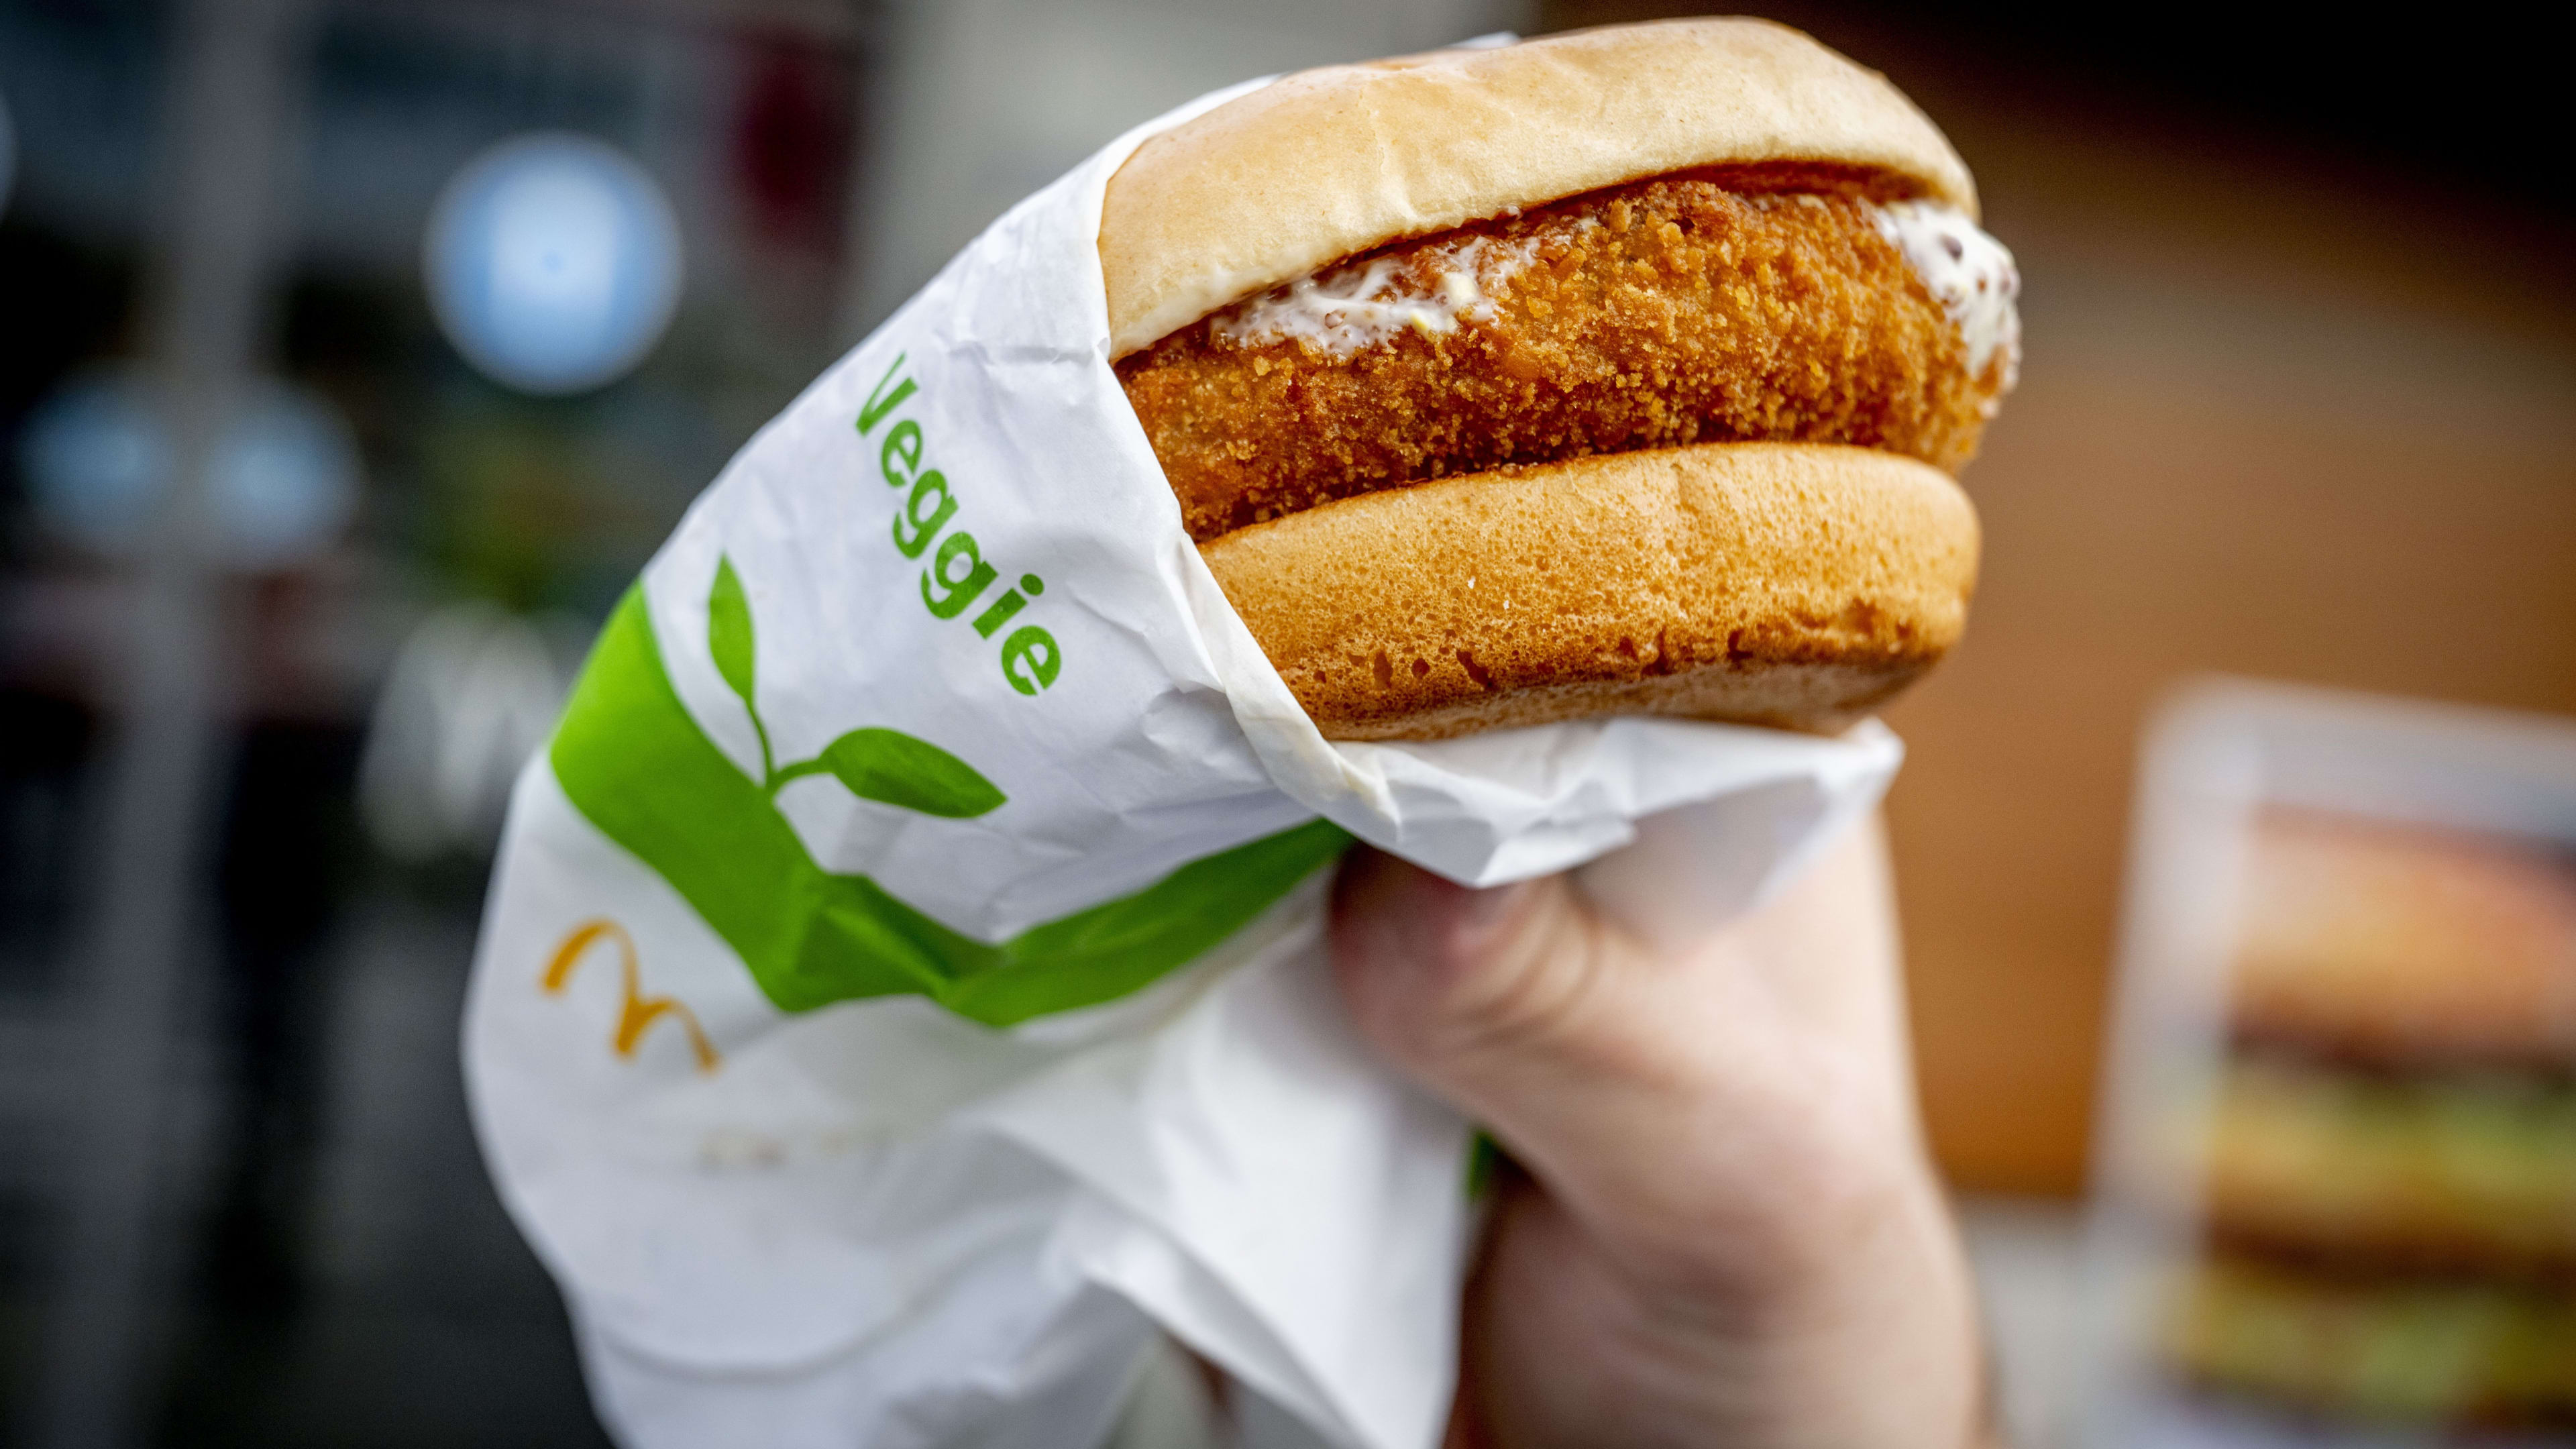 Oud-medewerker onthult: 'McDonald's verkocht vleeskroketten als vegetarische'